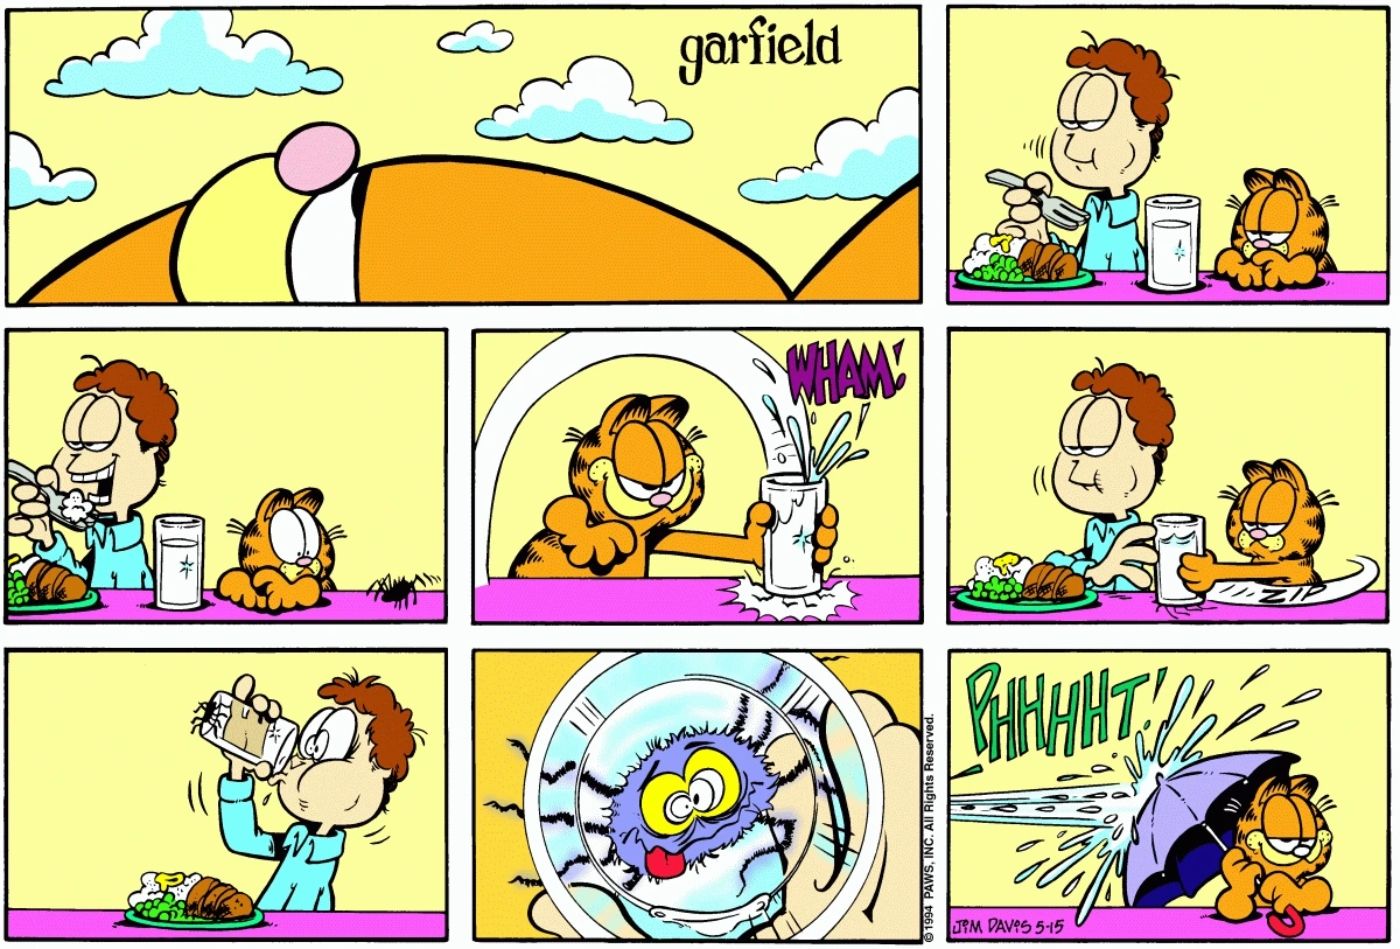 Garfield pranking Jon with a spider.